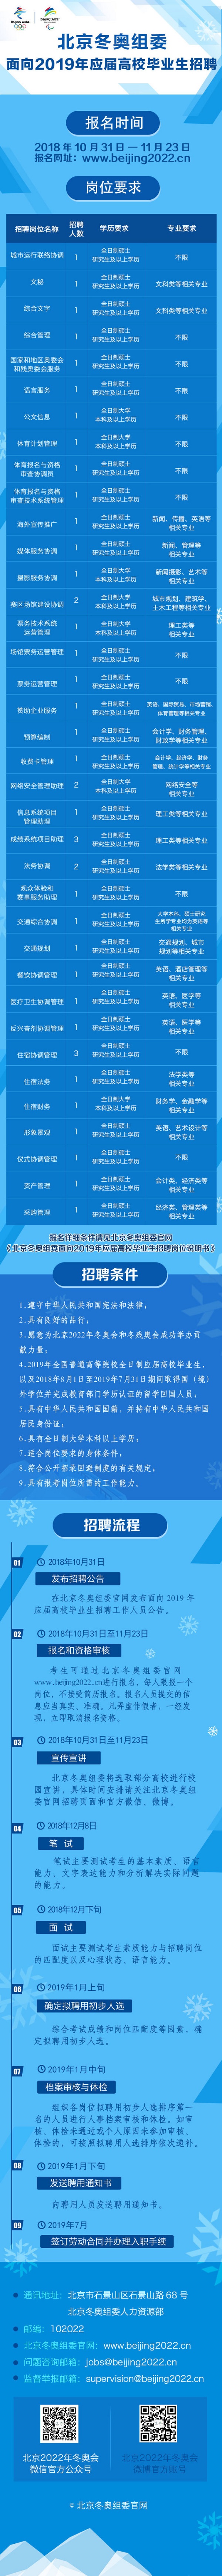 北京冬奥组委面向2019年应届高校毕业生招聘岗位说明书